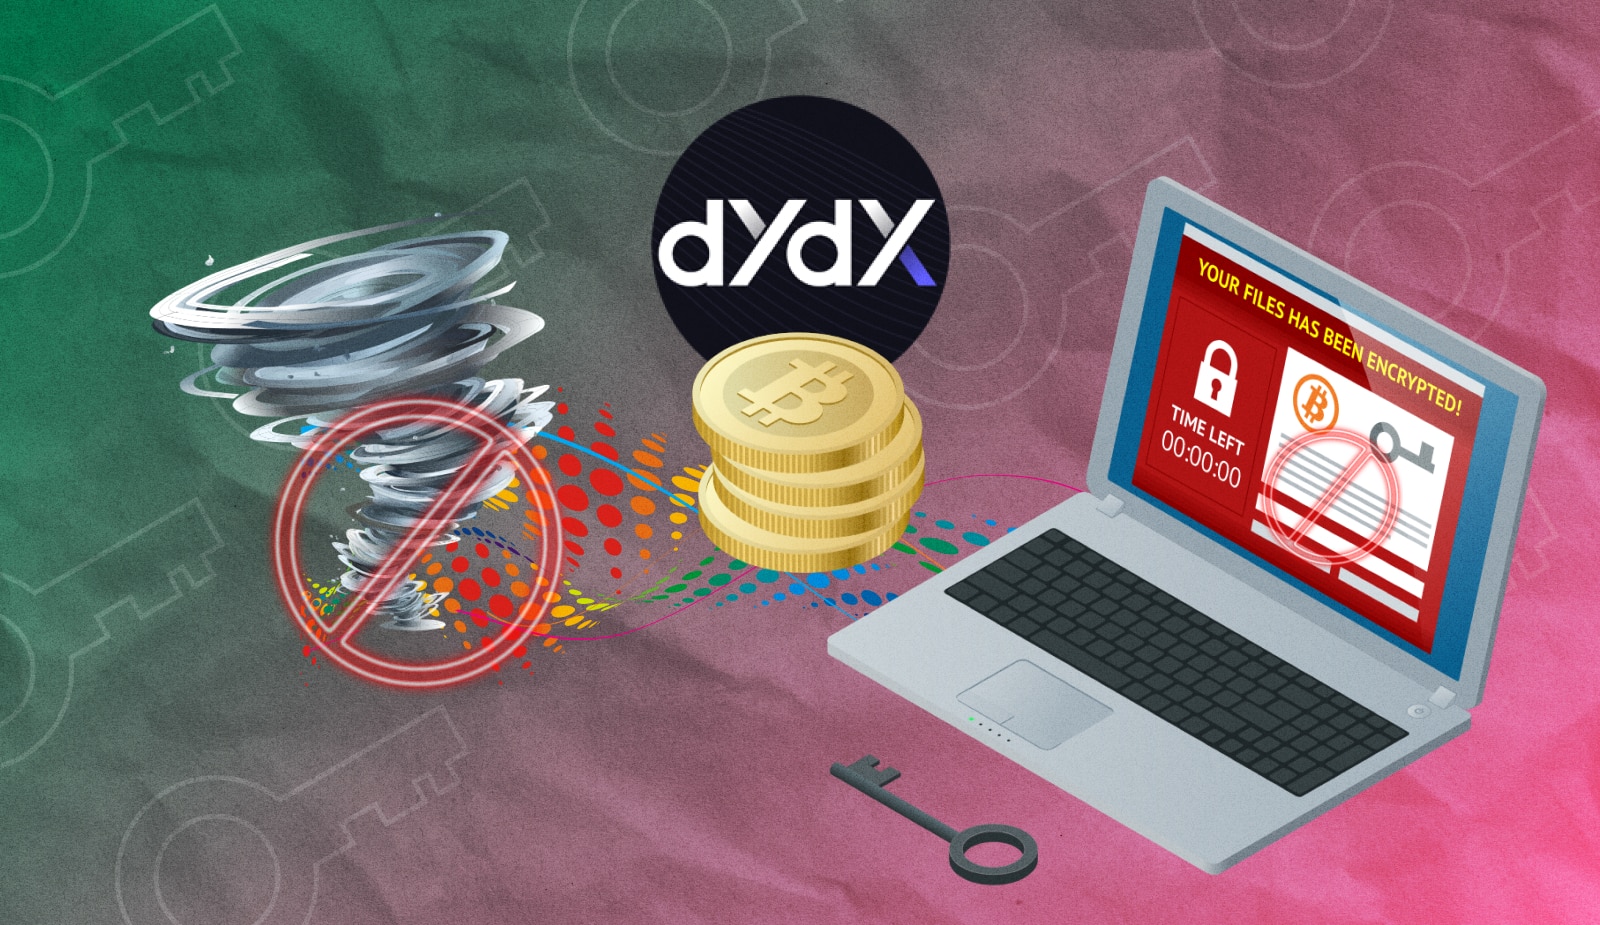 Биржа dYdX заблокировала аккаунты, связанные с Tornado Cash. Заглавный коллаж новости.